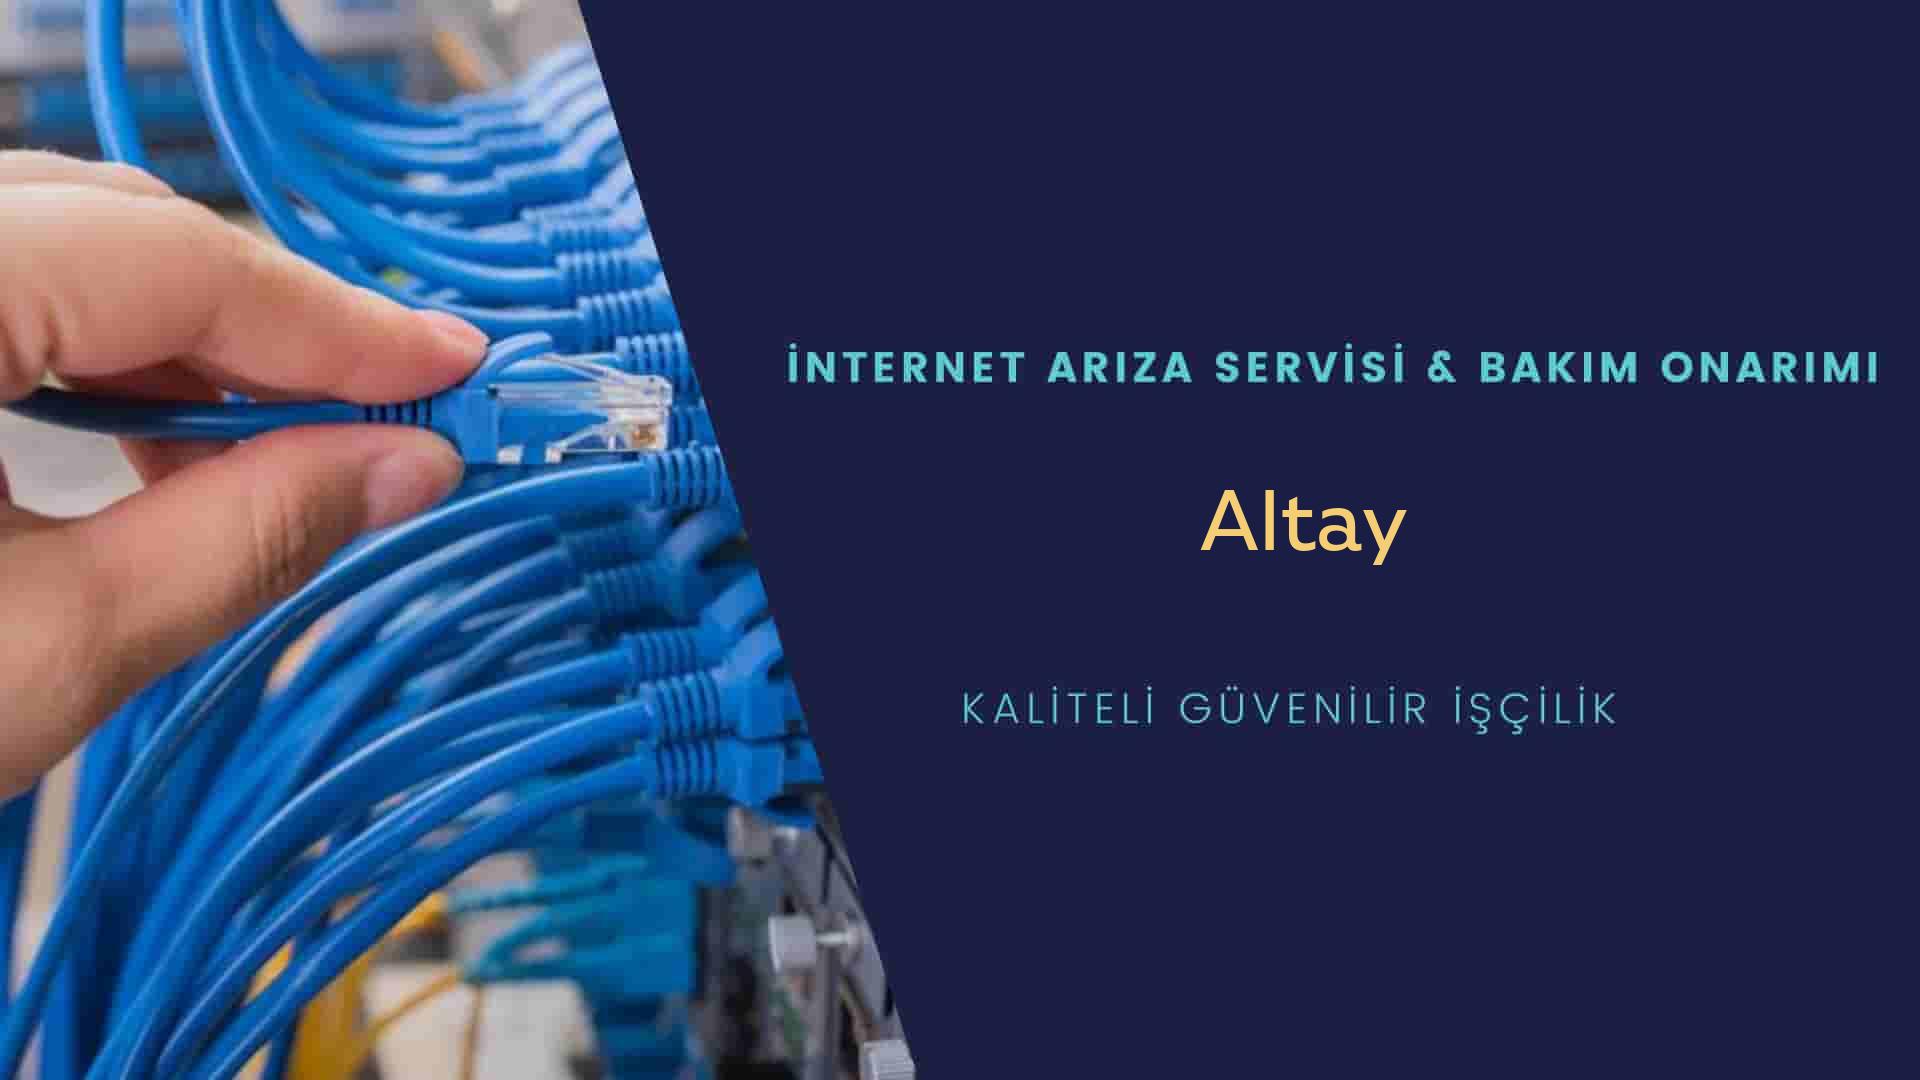 Altay Mahallesi internet kablosu çekimi yapan yerler veya elektrikçiler mi? arıyorsunuz doğru yerdesiniz o zaman sizlere 7/24 yardımcı olacak profesyonel ustalarımız bir telefon kadar yakındır size.